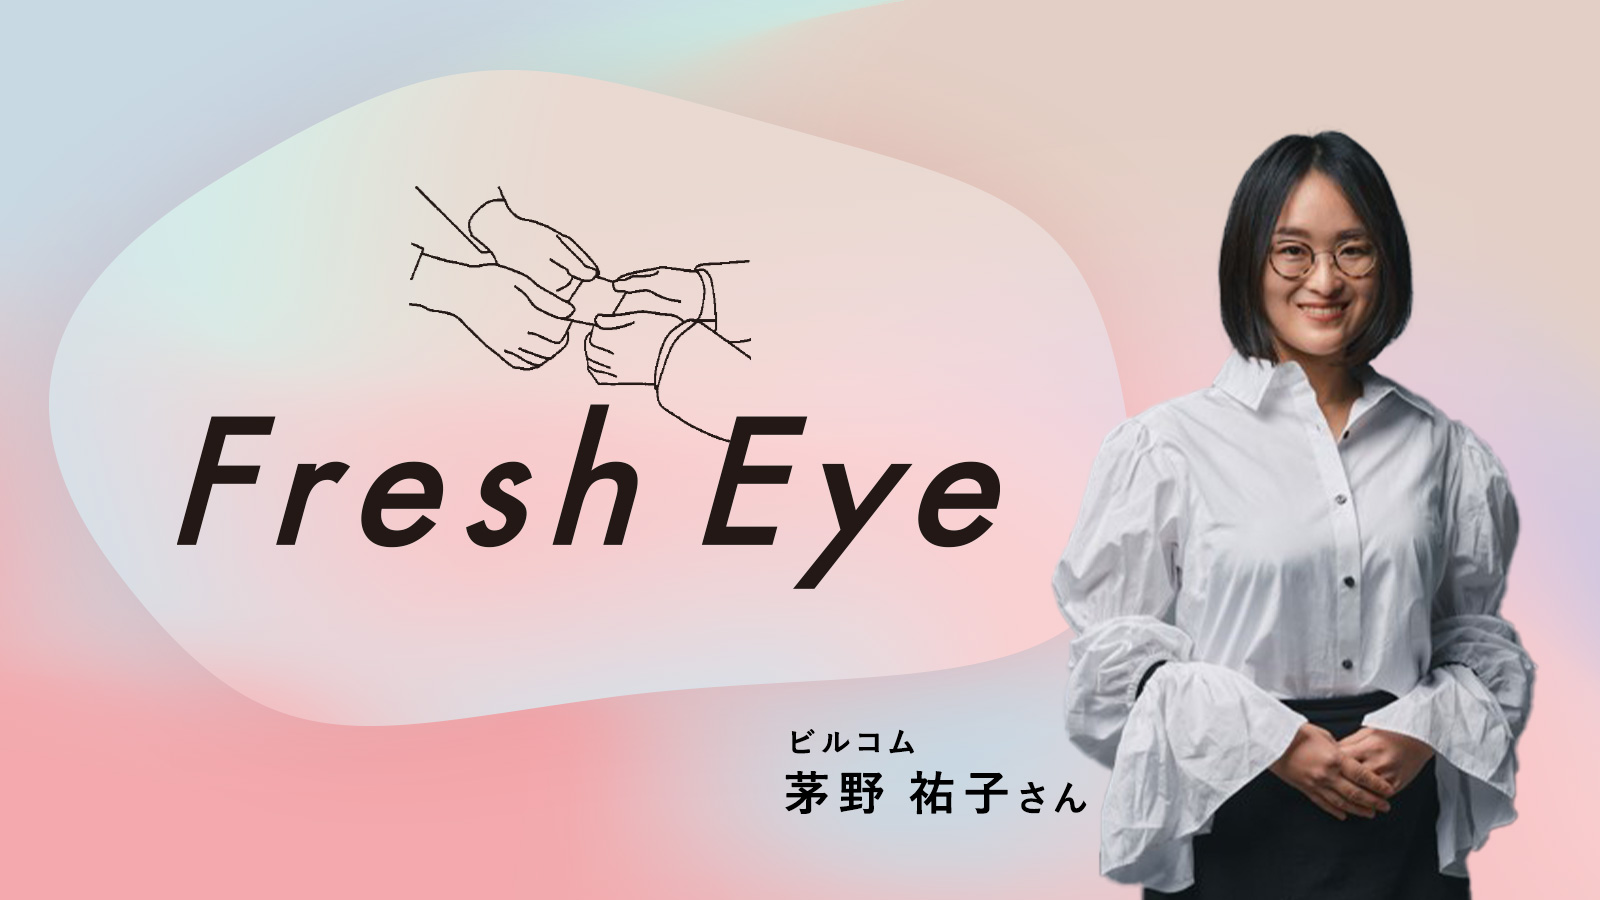 “推し”と歩む仕事人生／ビルコム茅野祐子さん〈Fresh Eye〉